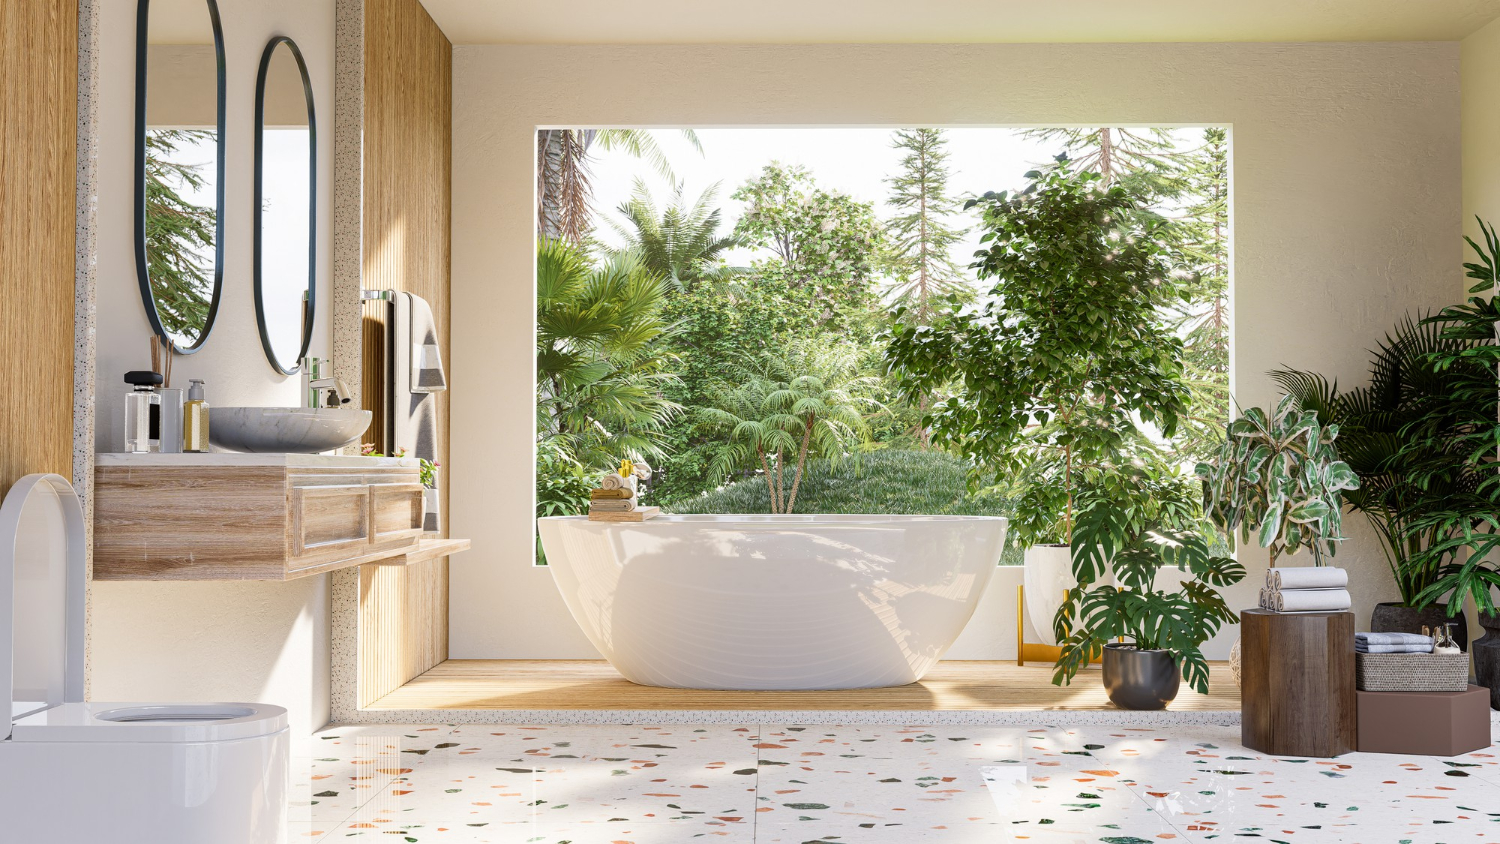 Desain kamar mandi natural akan membuat kamar mandi di rumahmu terasa lebih segar.